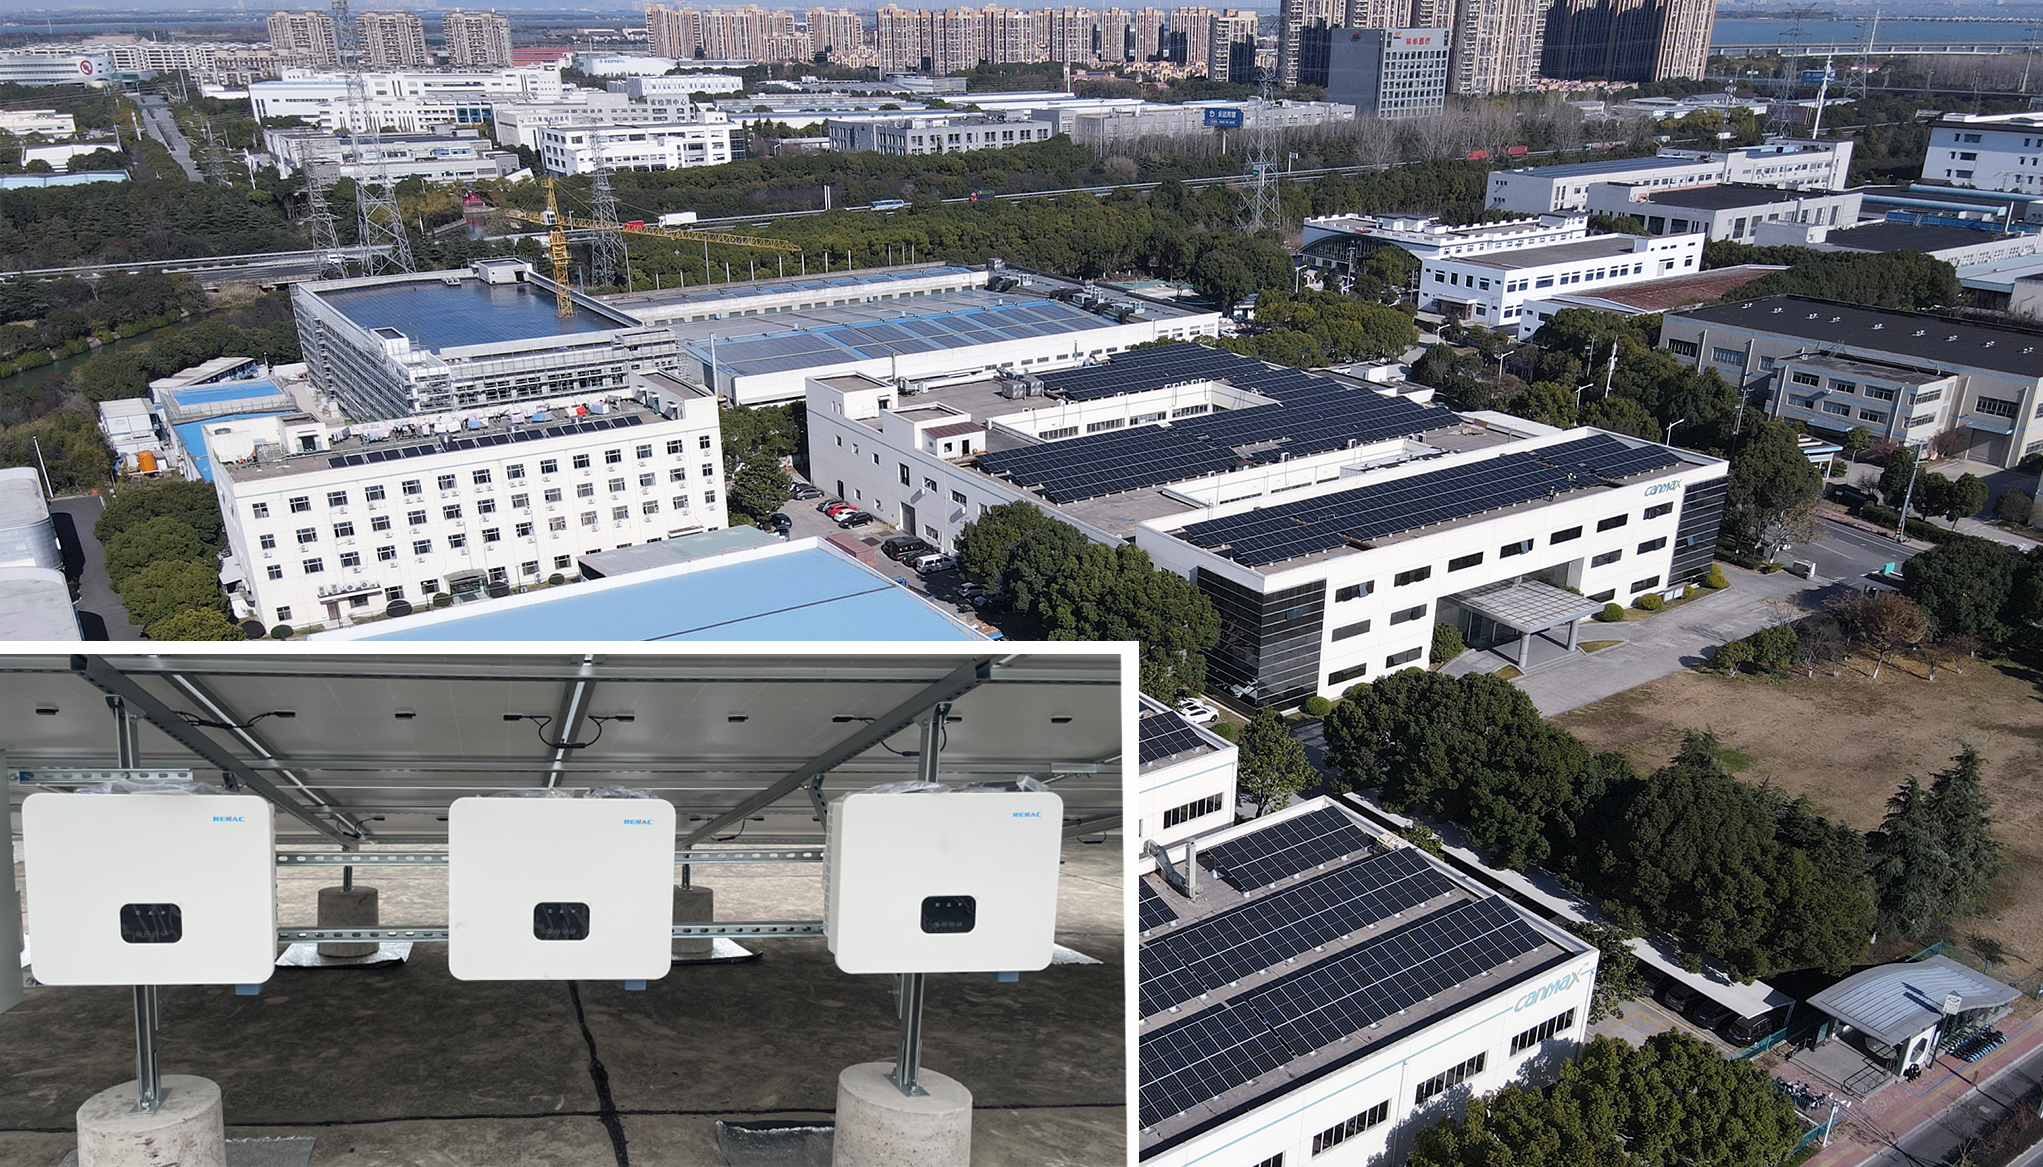 ¡Se puso en funcionamiento con éxito una nueva planta fotovoltaica comercial conectada a la red de RENAC de 1 MW con inversión propia en Suzhou, China!